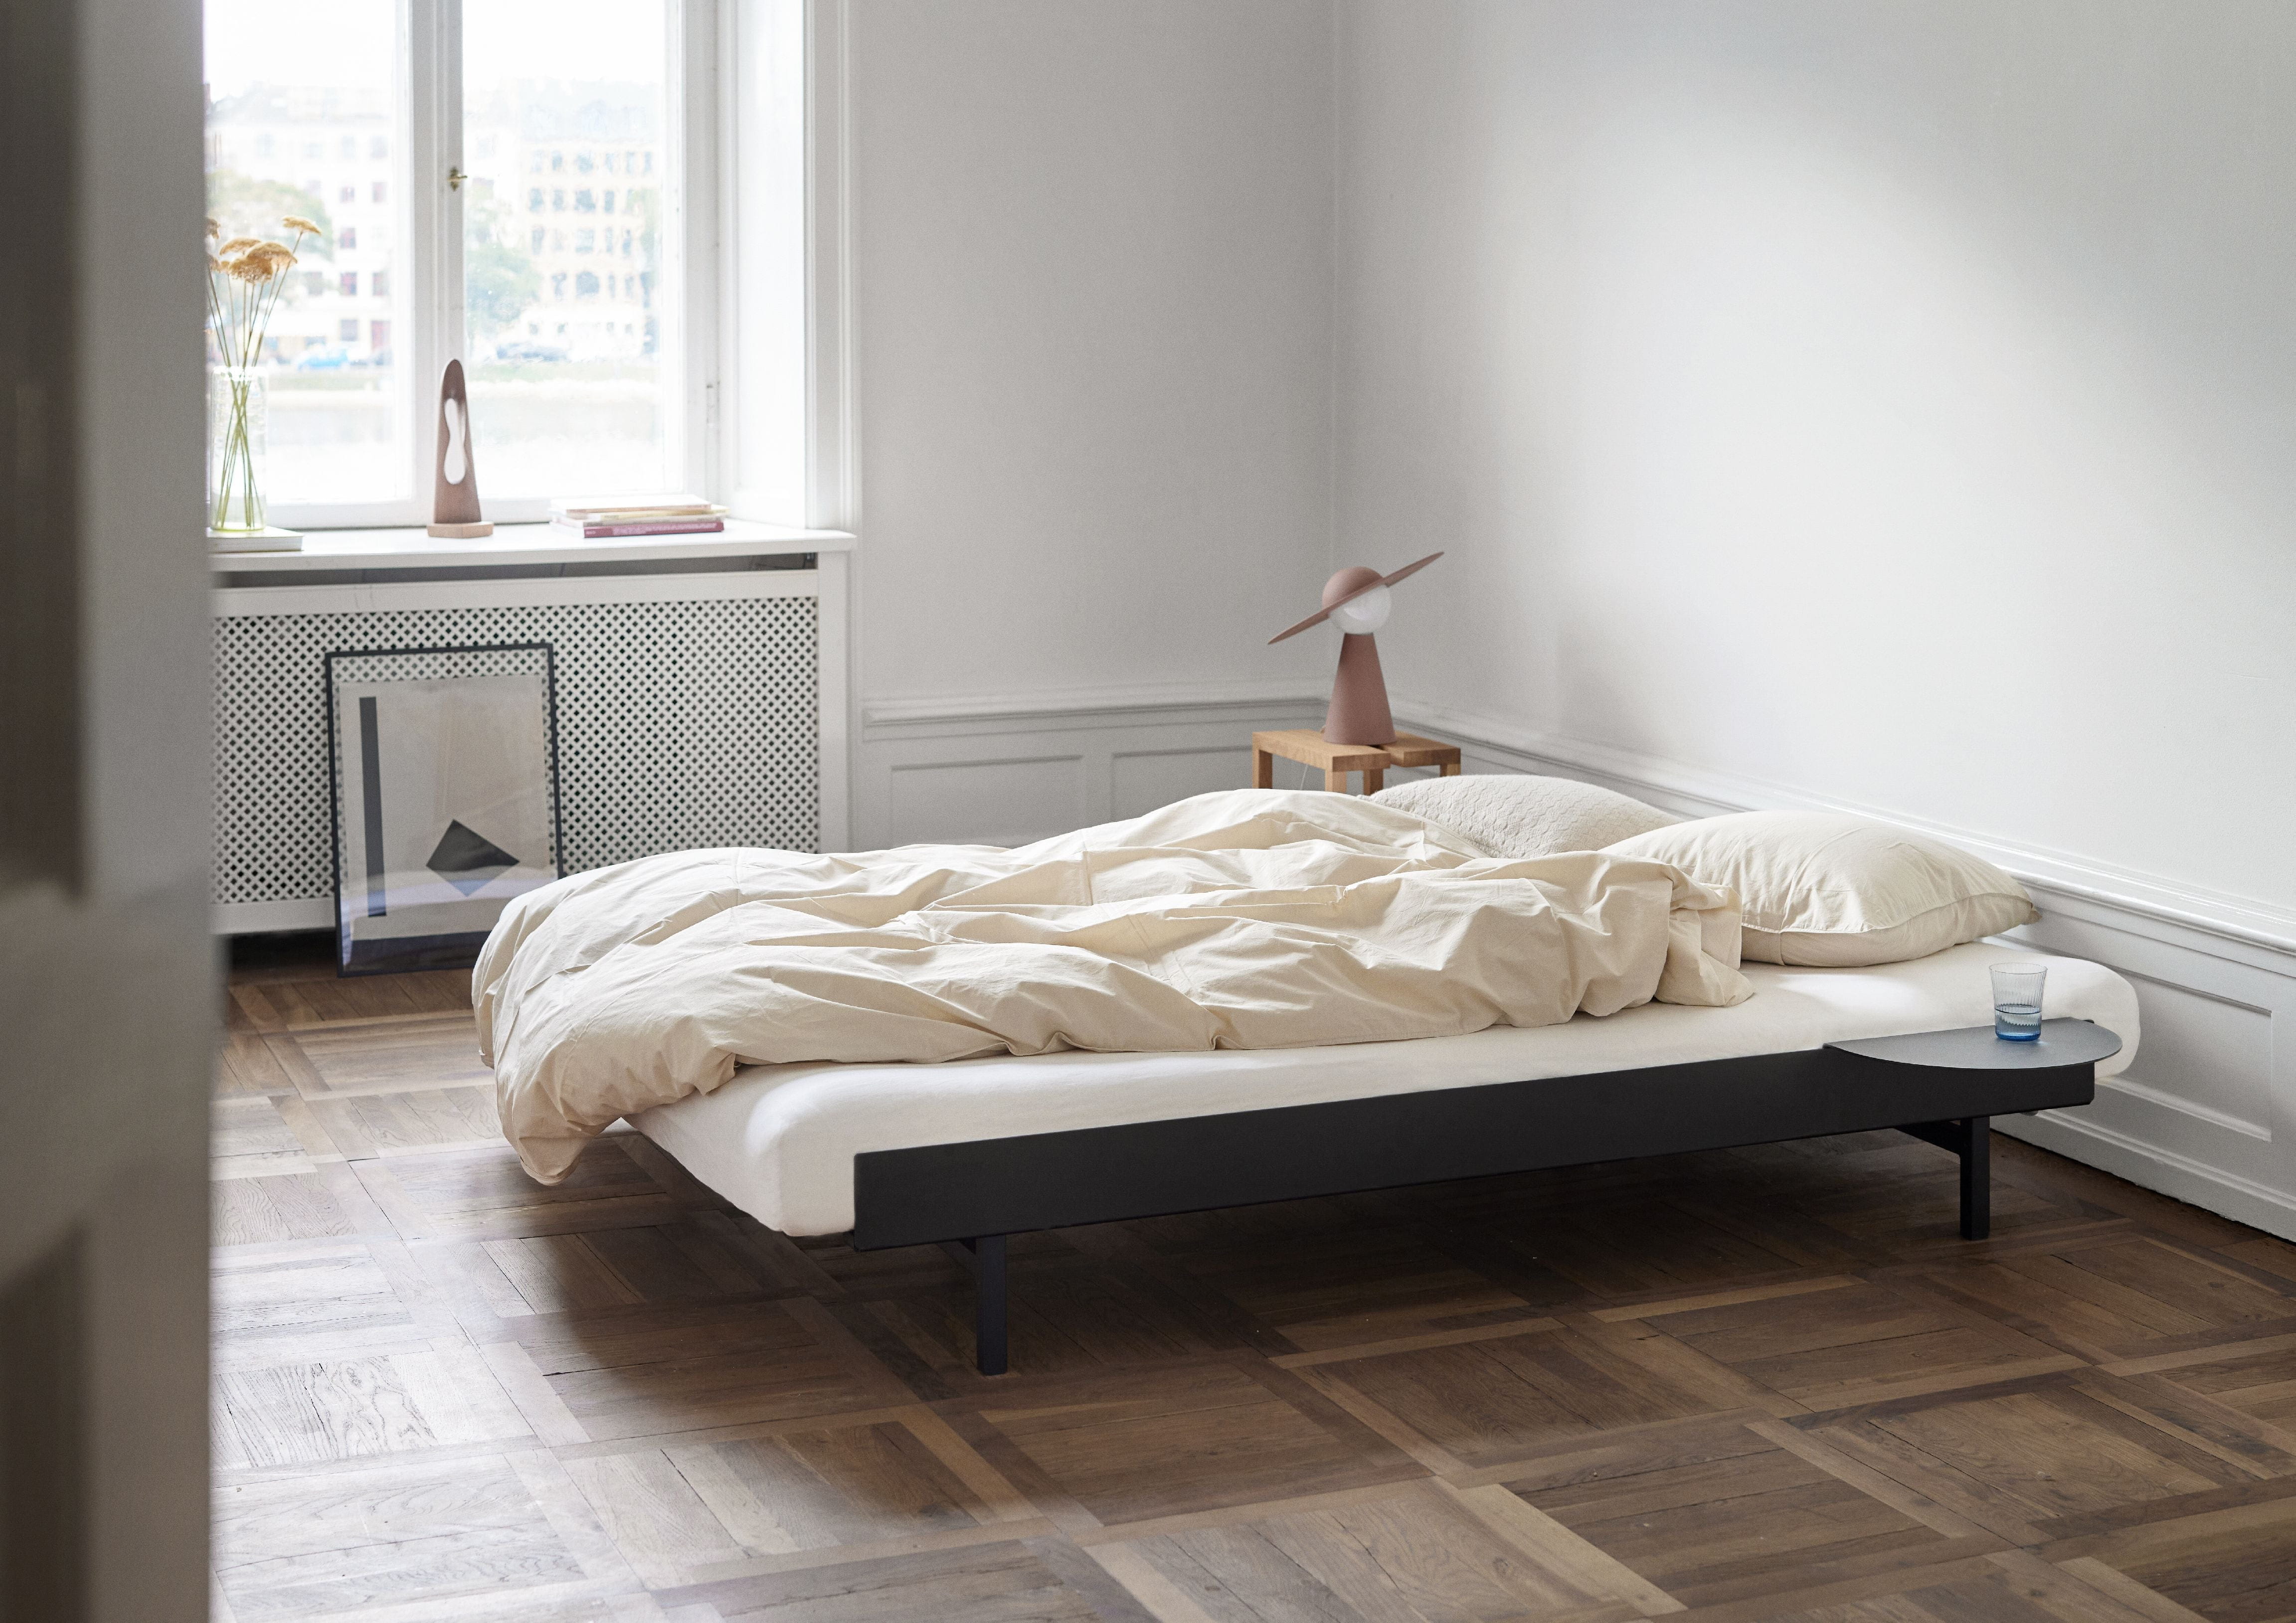 Moebe Bed With Bed Slats 160 Cm, Black